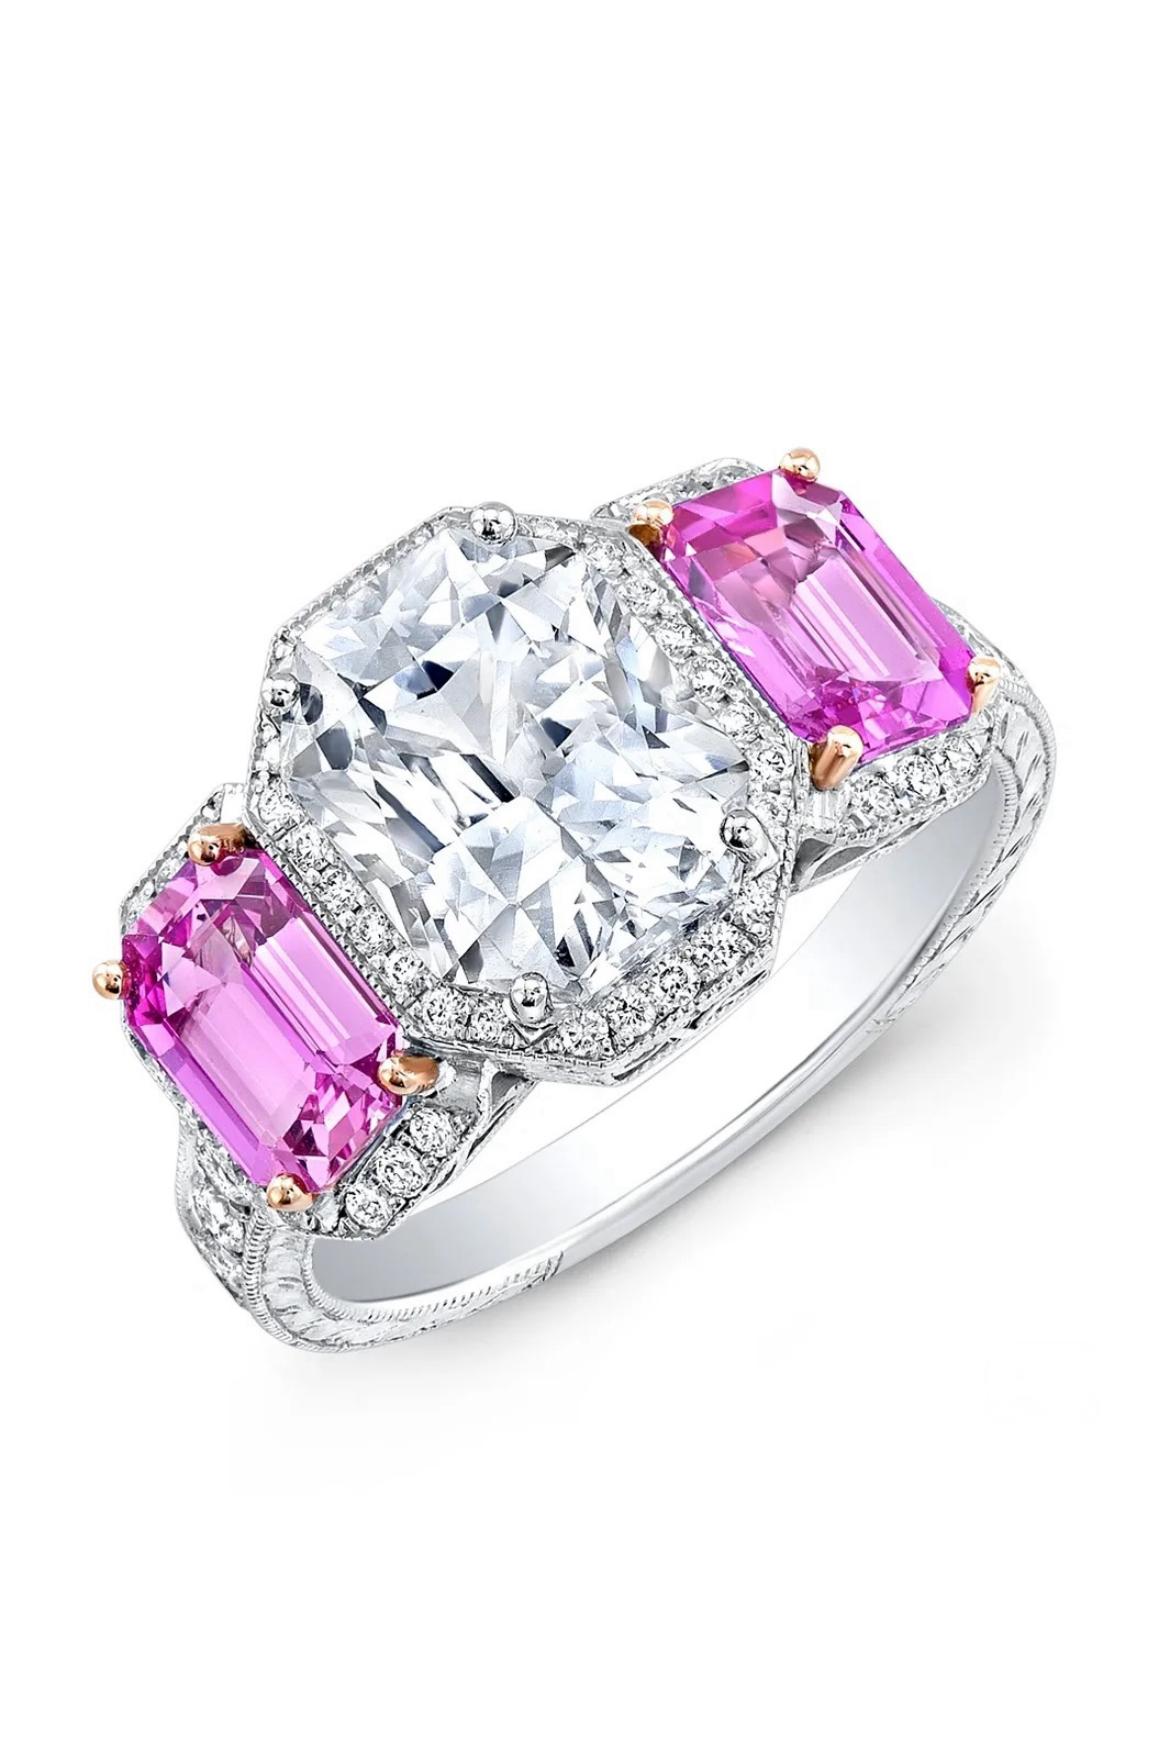 Ein weißer Saphir im Brillantschliff von 3,82 Karat wird von zwei rosafarbenen Saphiren (2,25 Karat) und runden Diamanten (0,60 Karat) in 18-karätigem Weißgold umrahmt. GIA-zertifiziert.